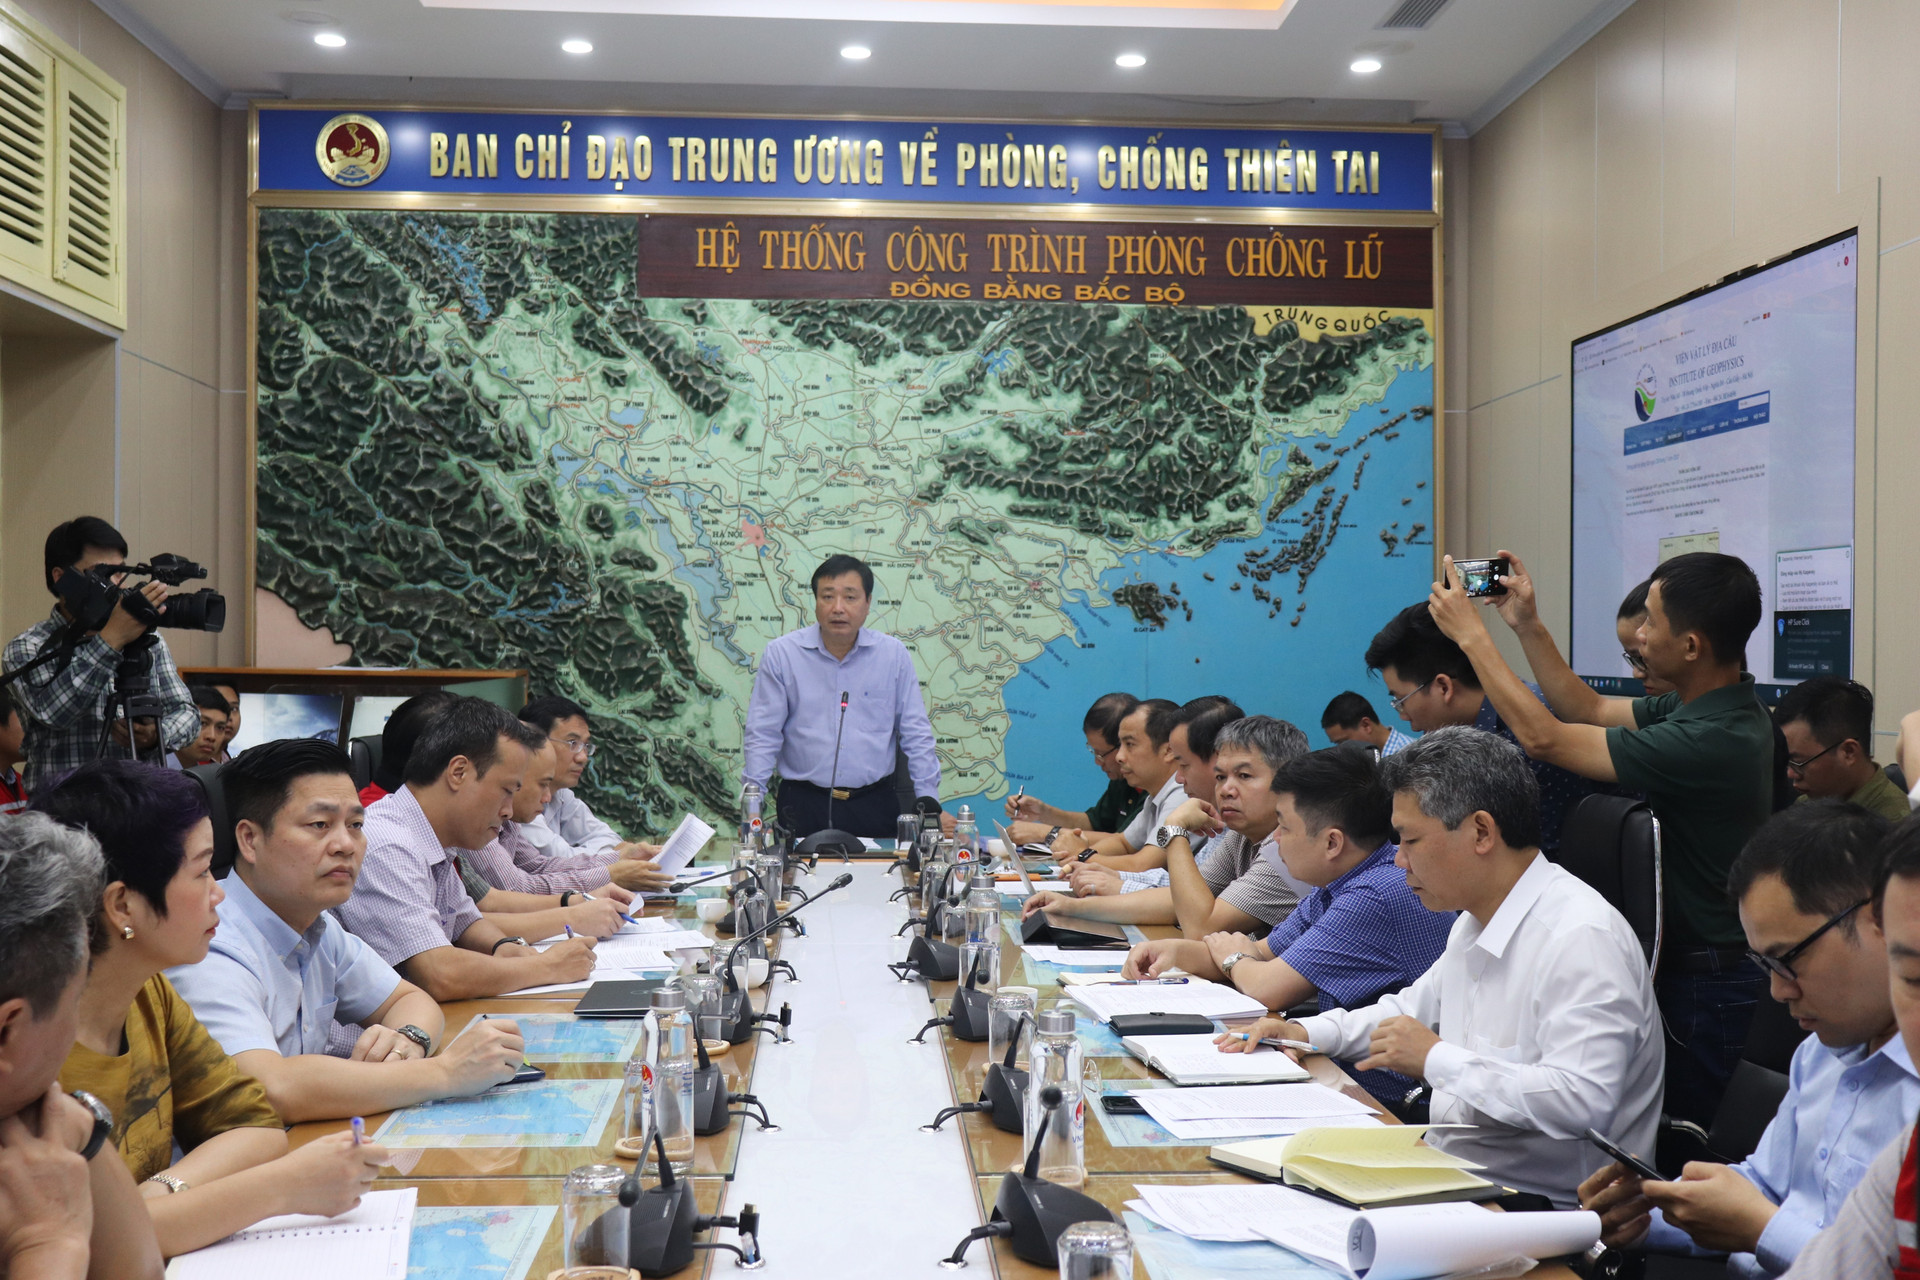 Tổng cục trưởng Tổng cục PCTT - Phó trưởng Ban chỉ đạo TW PCTT Trần Quang Hoài chủ trì cuộc họp 